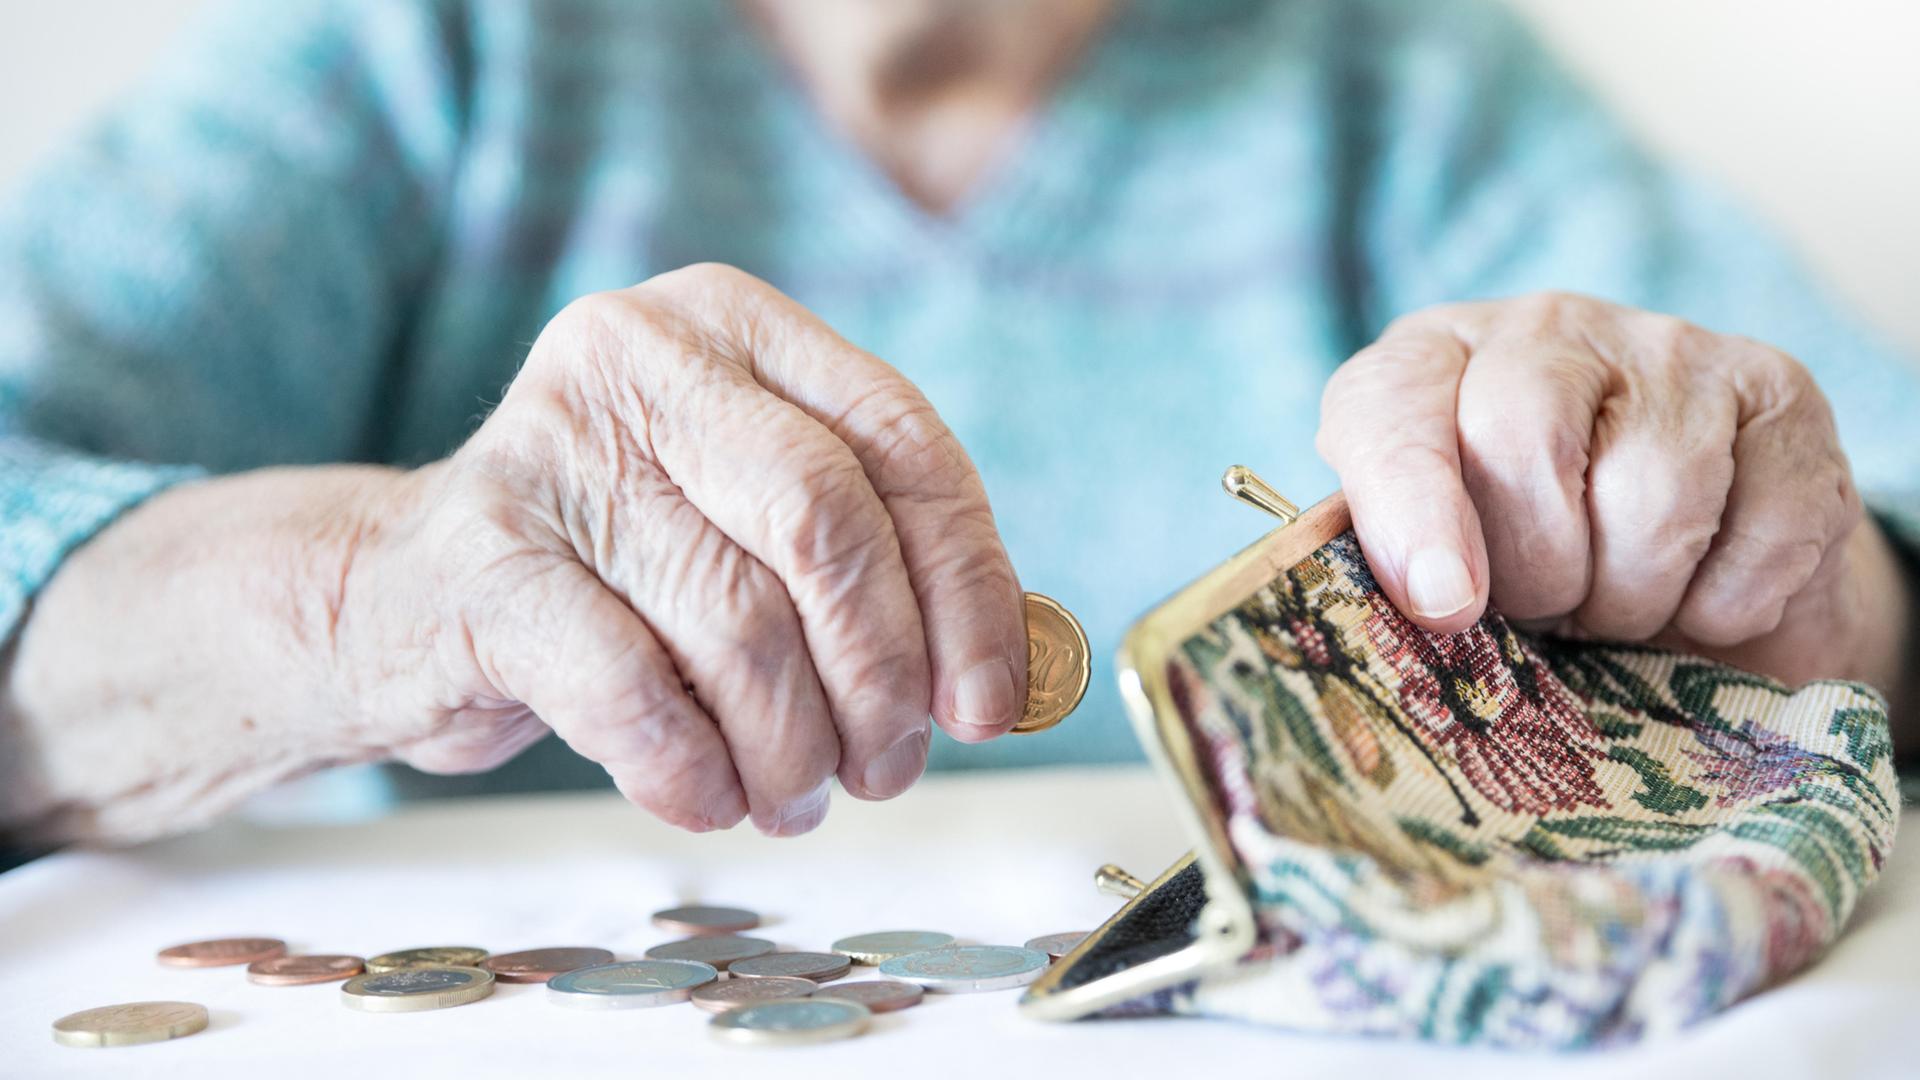 Eine alte Frau zählt ihr Geld und hat eine Geldbörse vor sich liegen.  